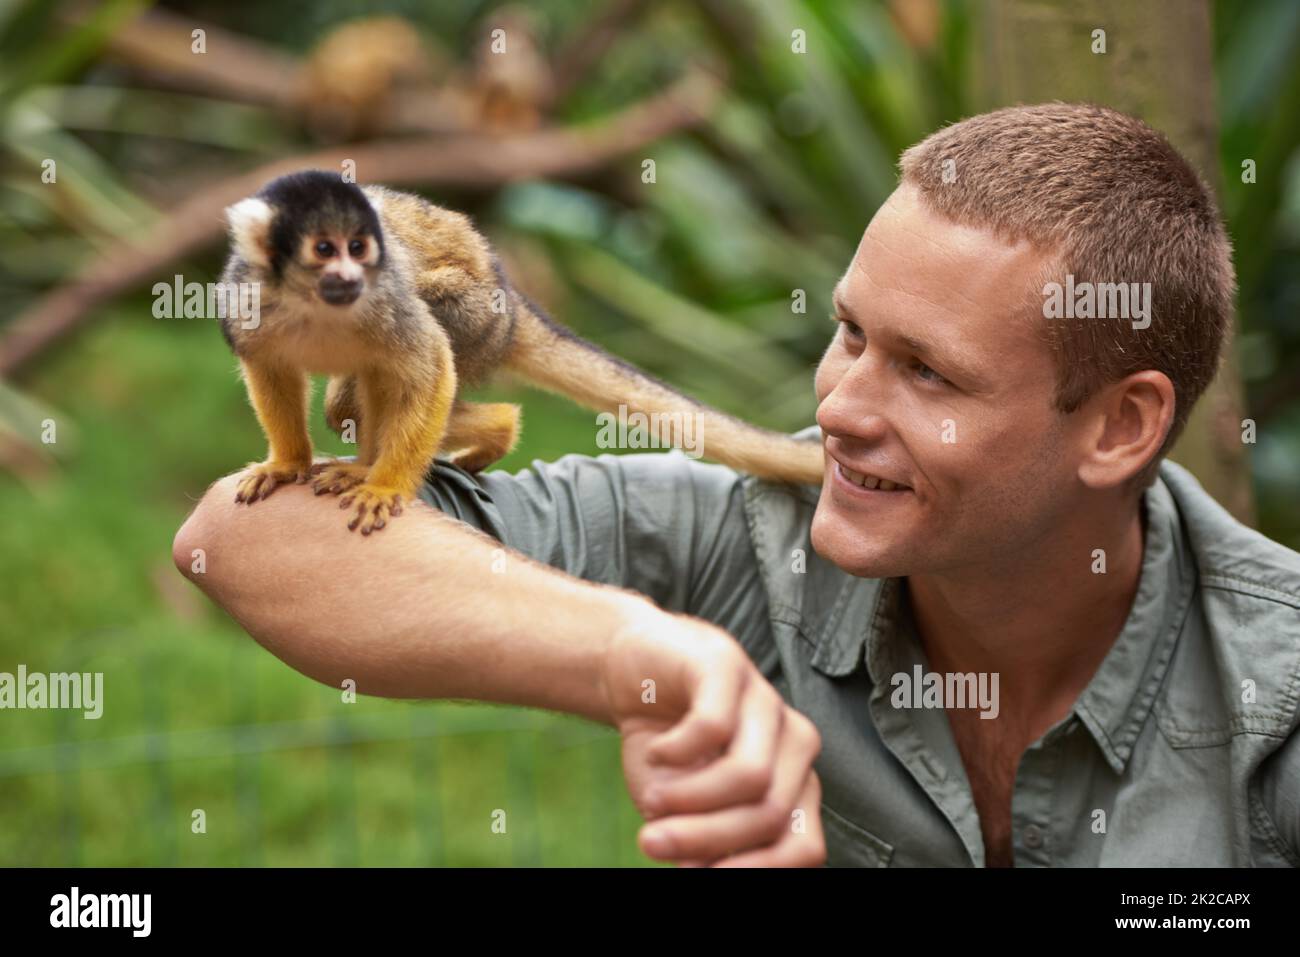 Tarzan liebte es, Zeit mit seinem kleinen Freund zu verbringen. Aufnahme eines jungen Mannes, der in einem Wildpark mit einem kleinen Affen interagiert. Stockfoto